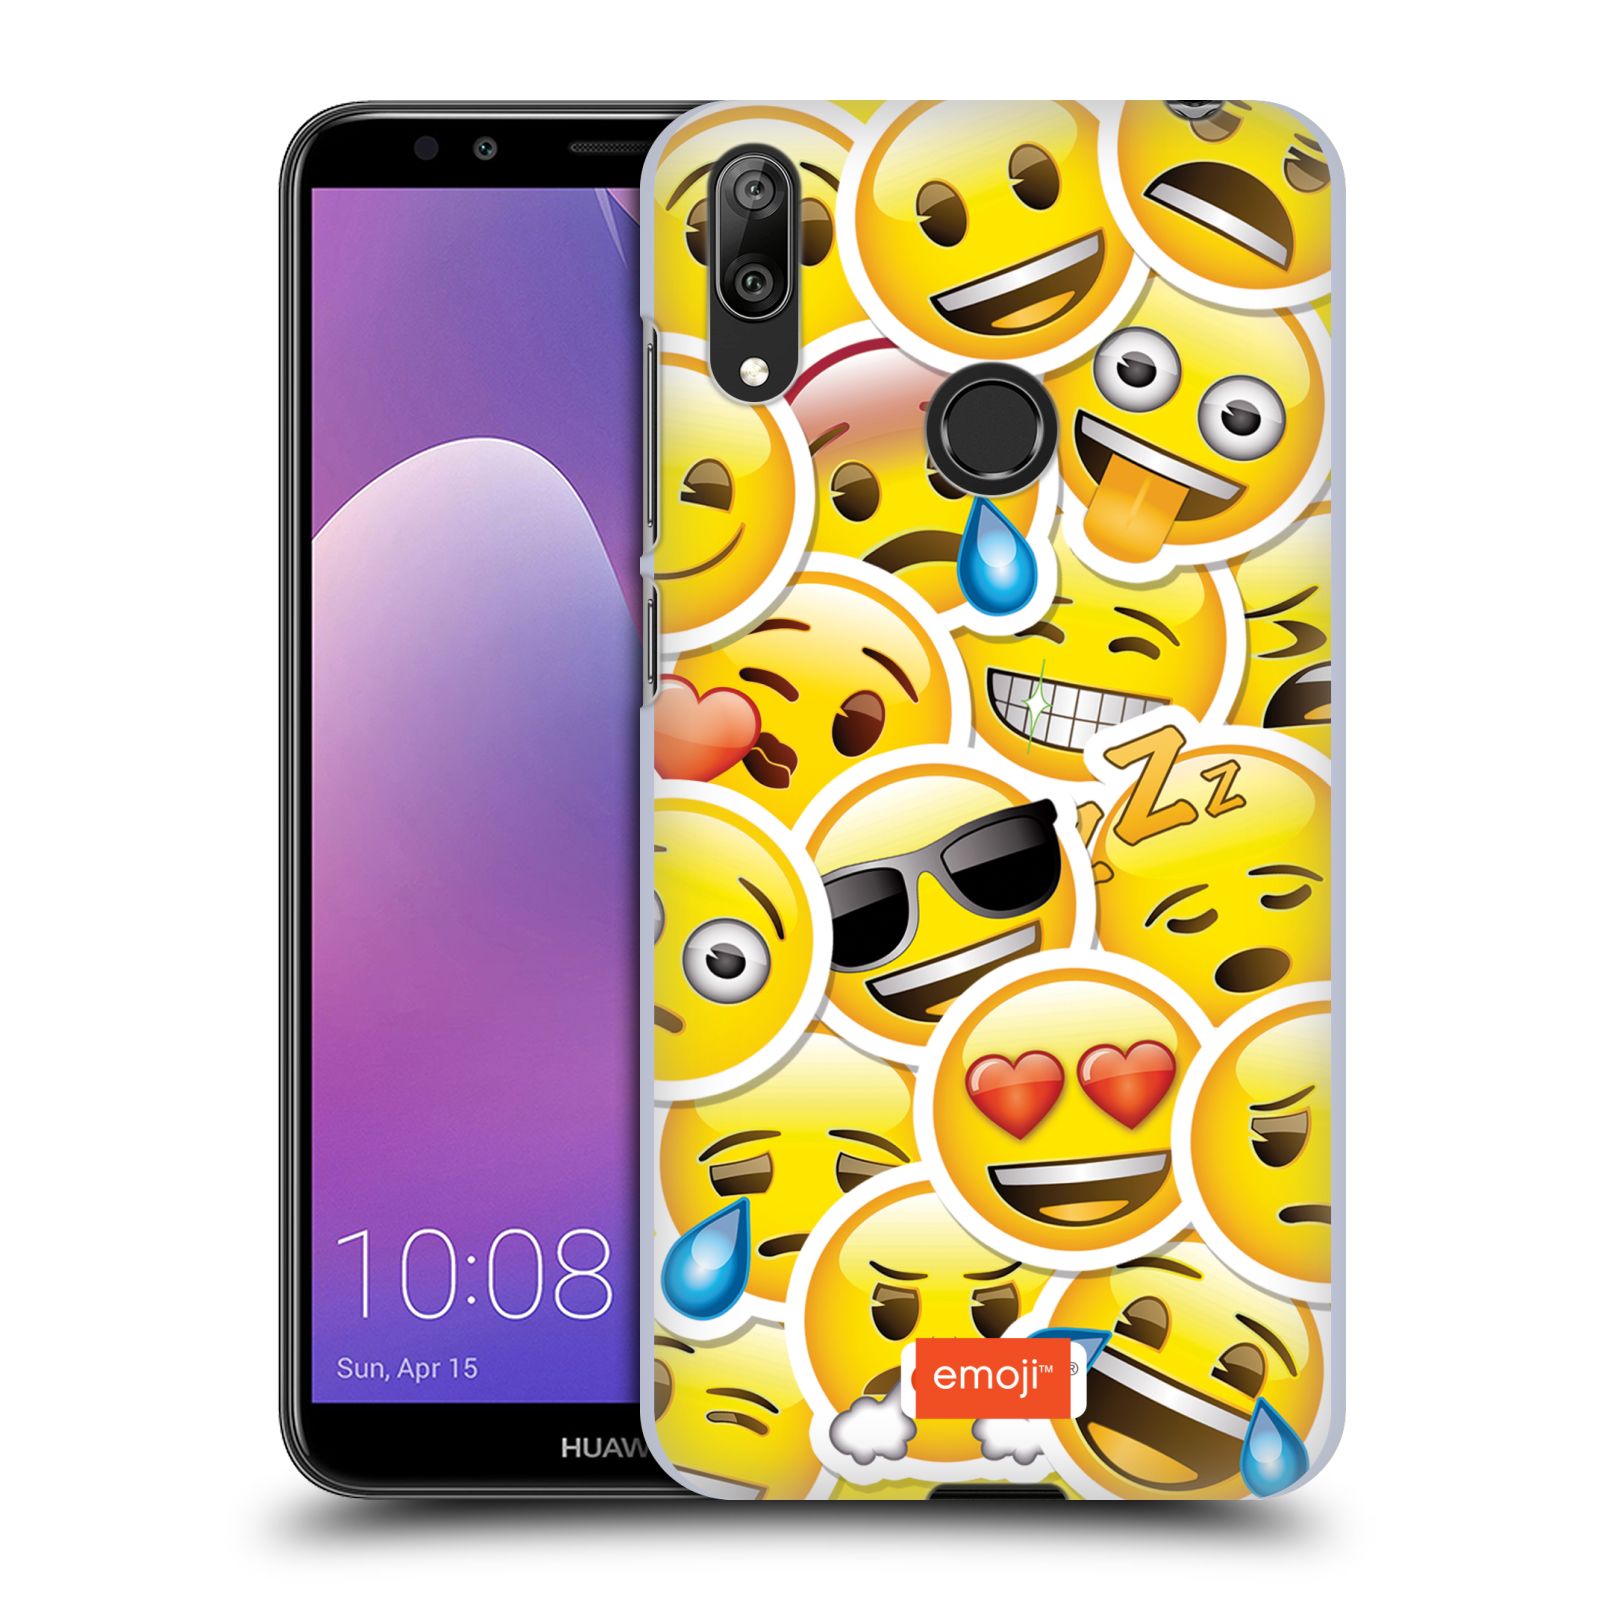 Pouzdro na mobil Huawei Y7 2019 - Head Case - smajlík oficiální kryt EMOJI velcí smajlíci nálepky